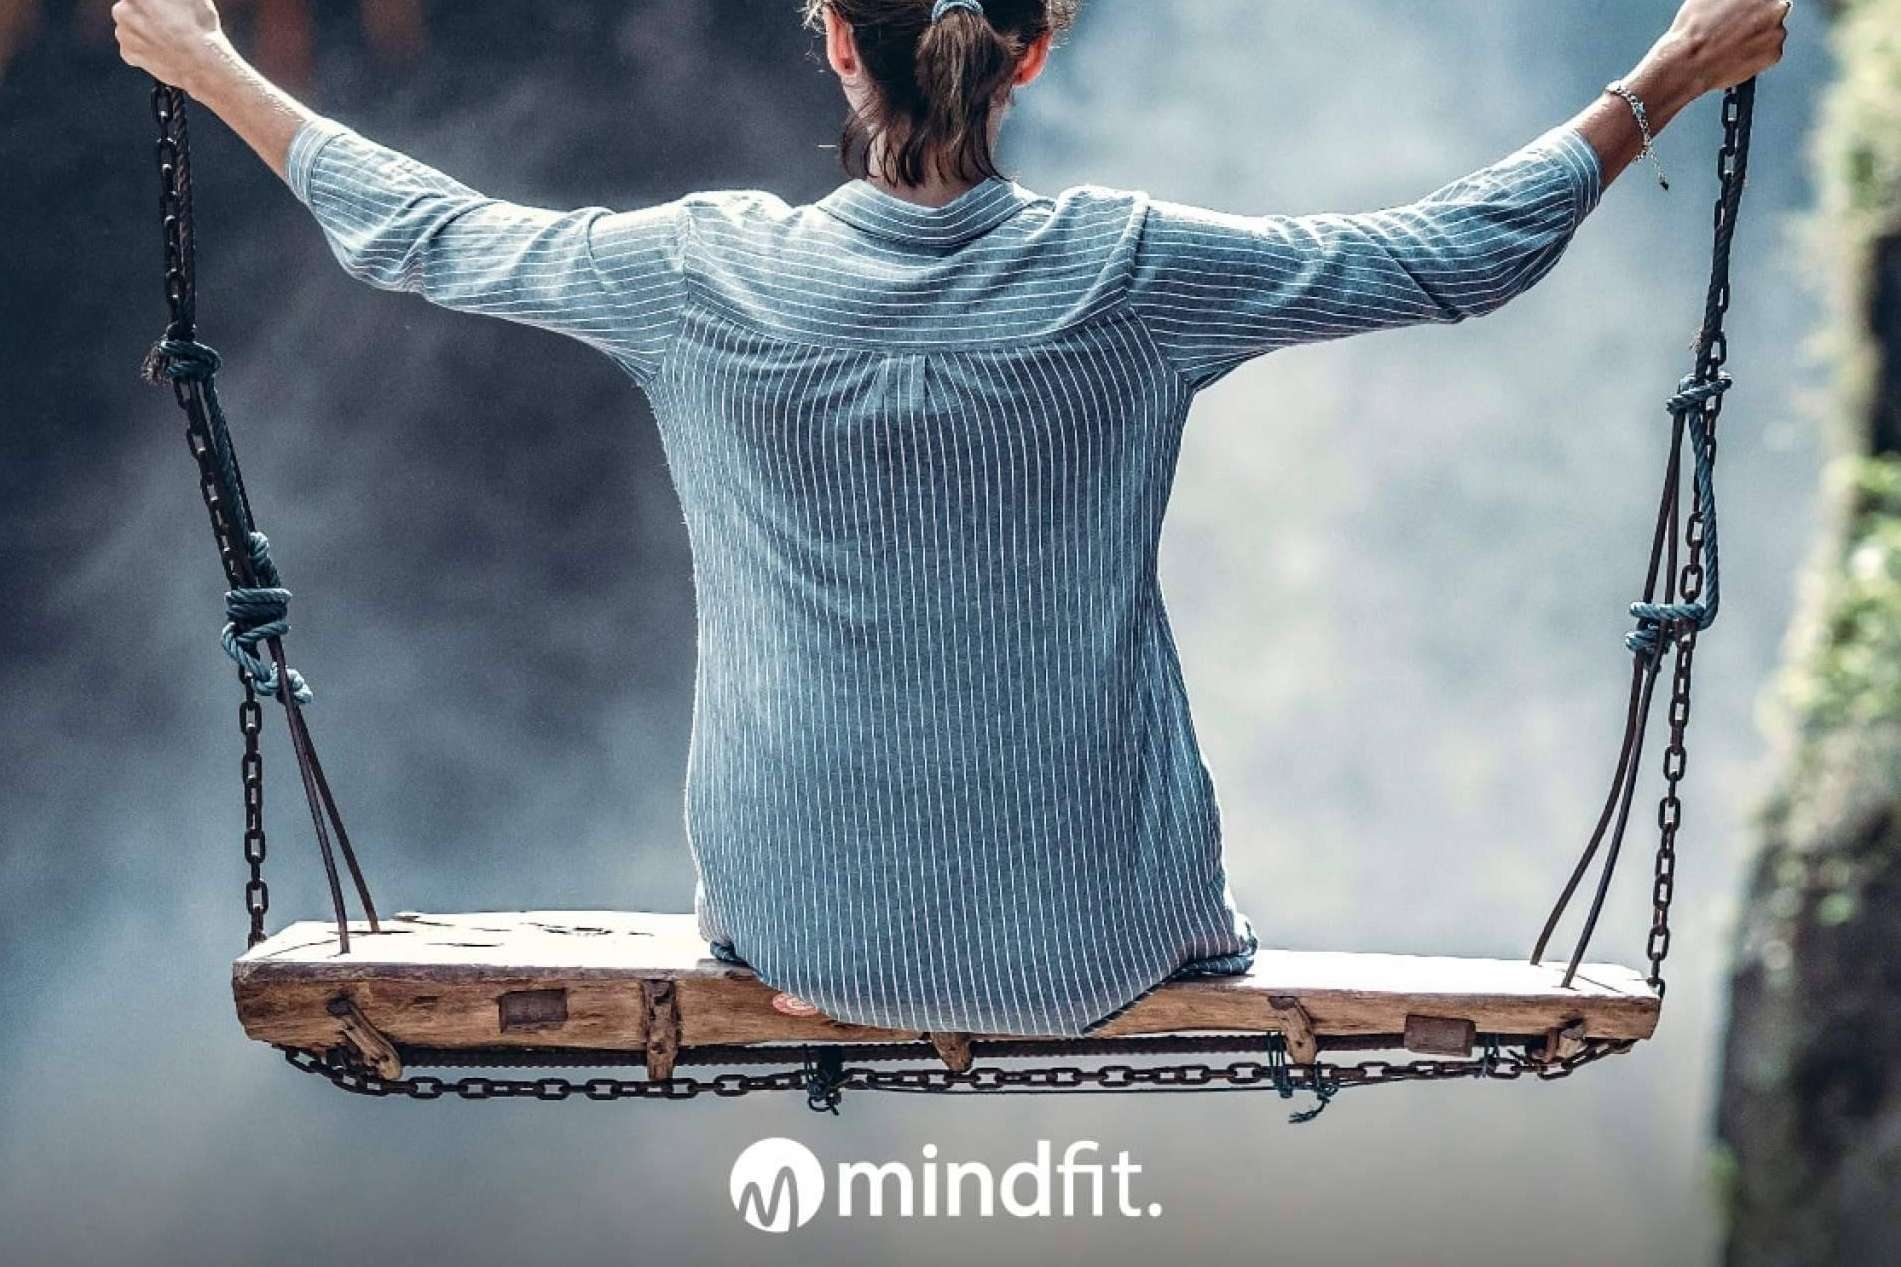 MindFit, la plataforma que está cambiando el concepto del bienestar corporativo